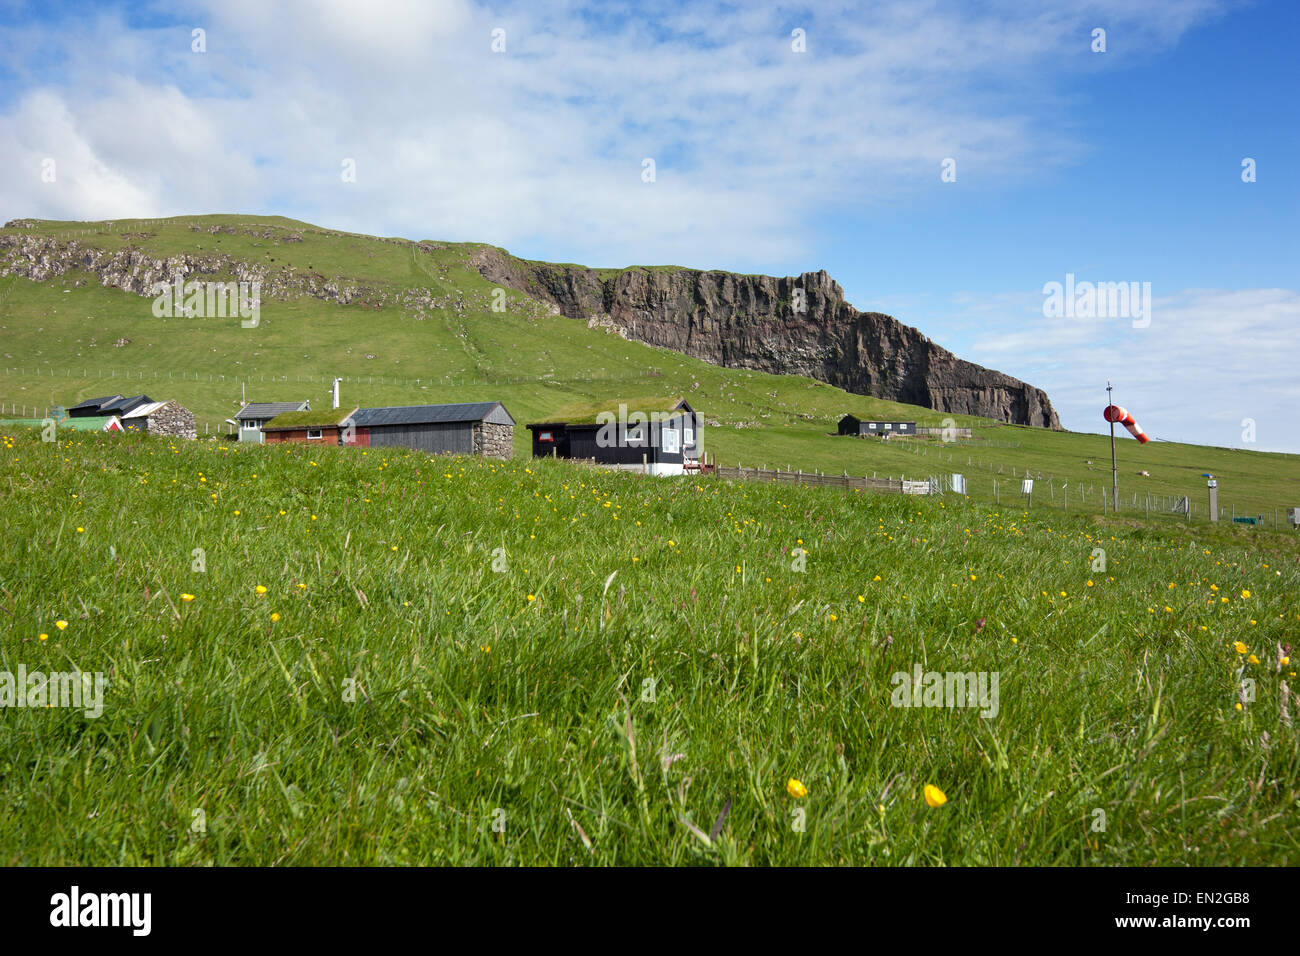 Mykines, Faroe Islands : scattered houses in a green field Stock Photo